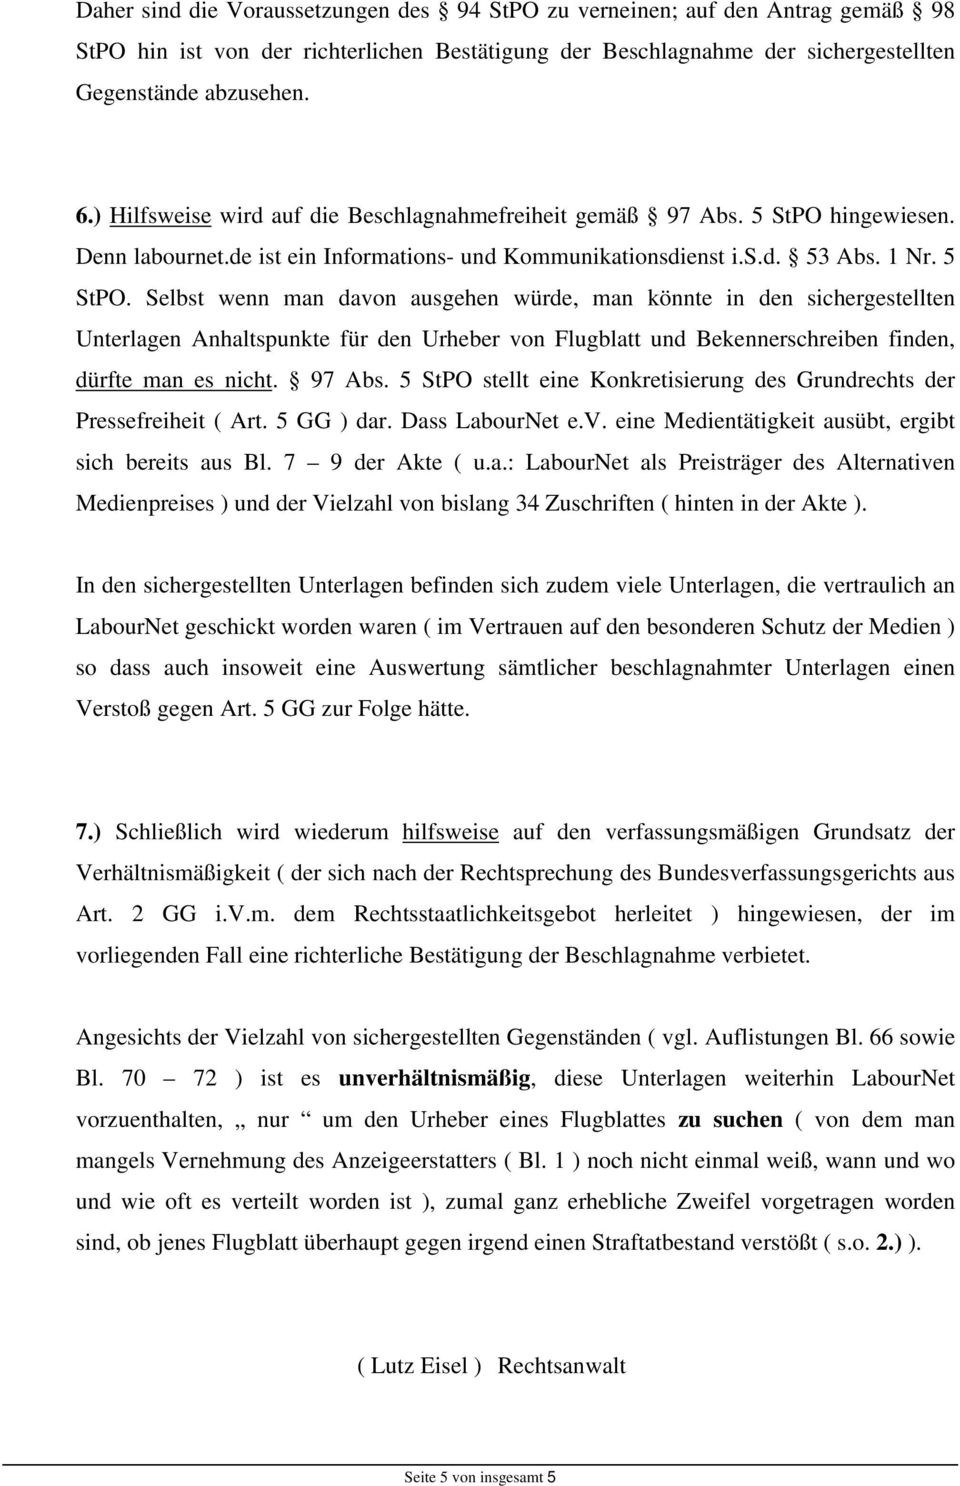 hingewiesen. Denn labournet.de ist ein Informations- und Kommunikationsdienst i.s.d. 53 Abs. 1 Nr. 5 StPO.